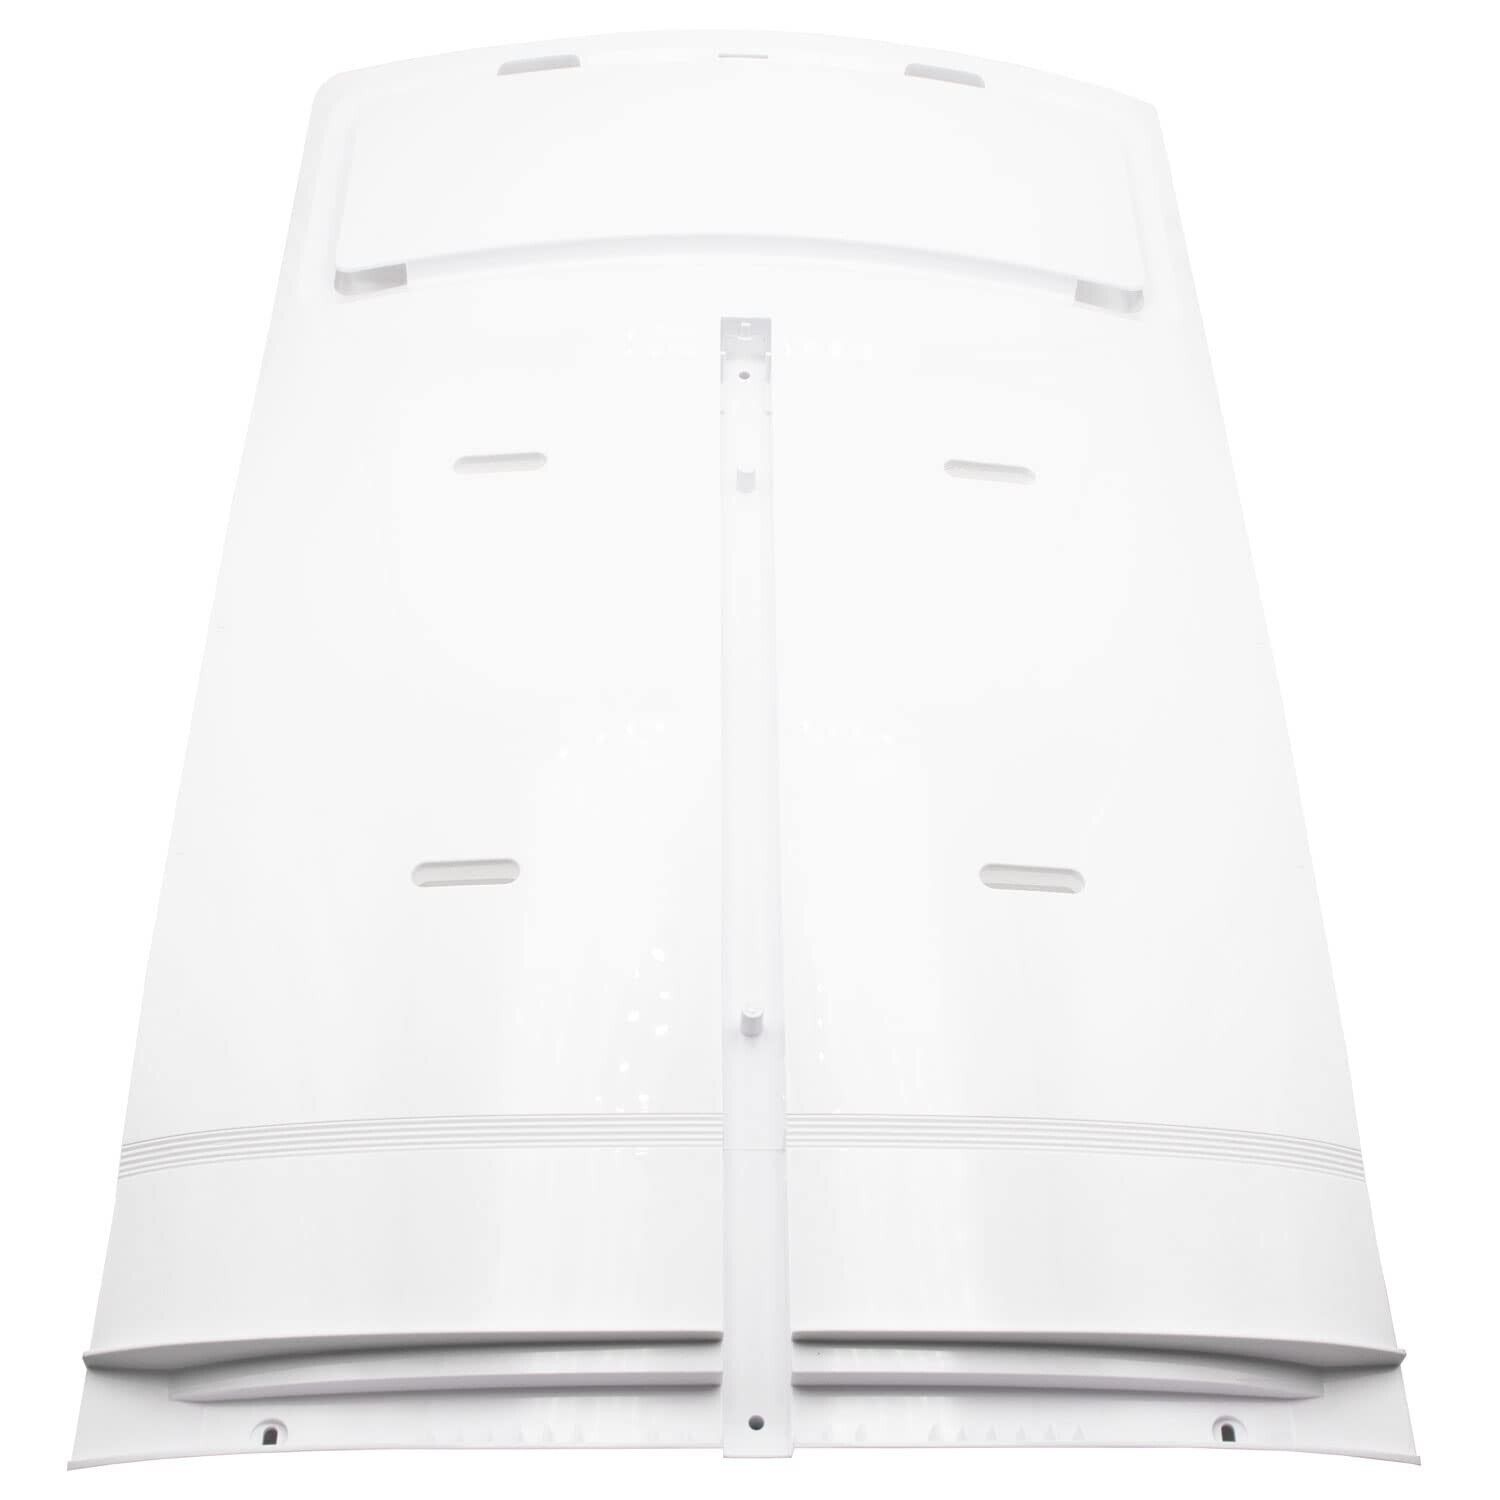 Supplying Demand DA97-12608A 3282527 Refrigerator Fresh Food Evaporator Cover